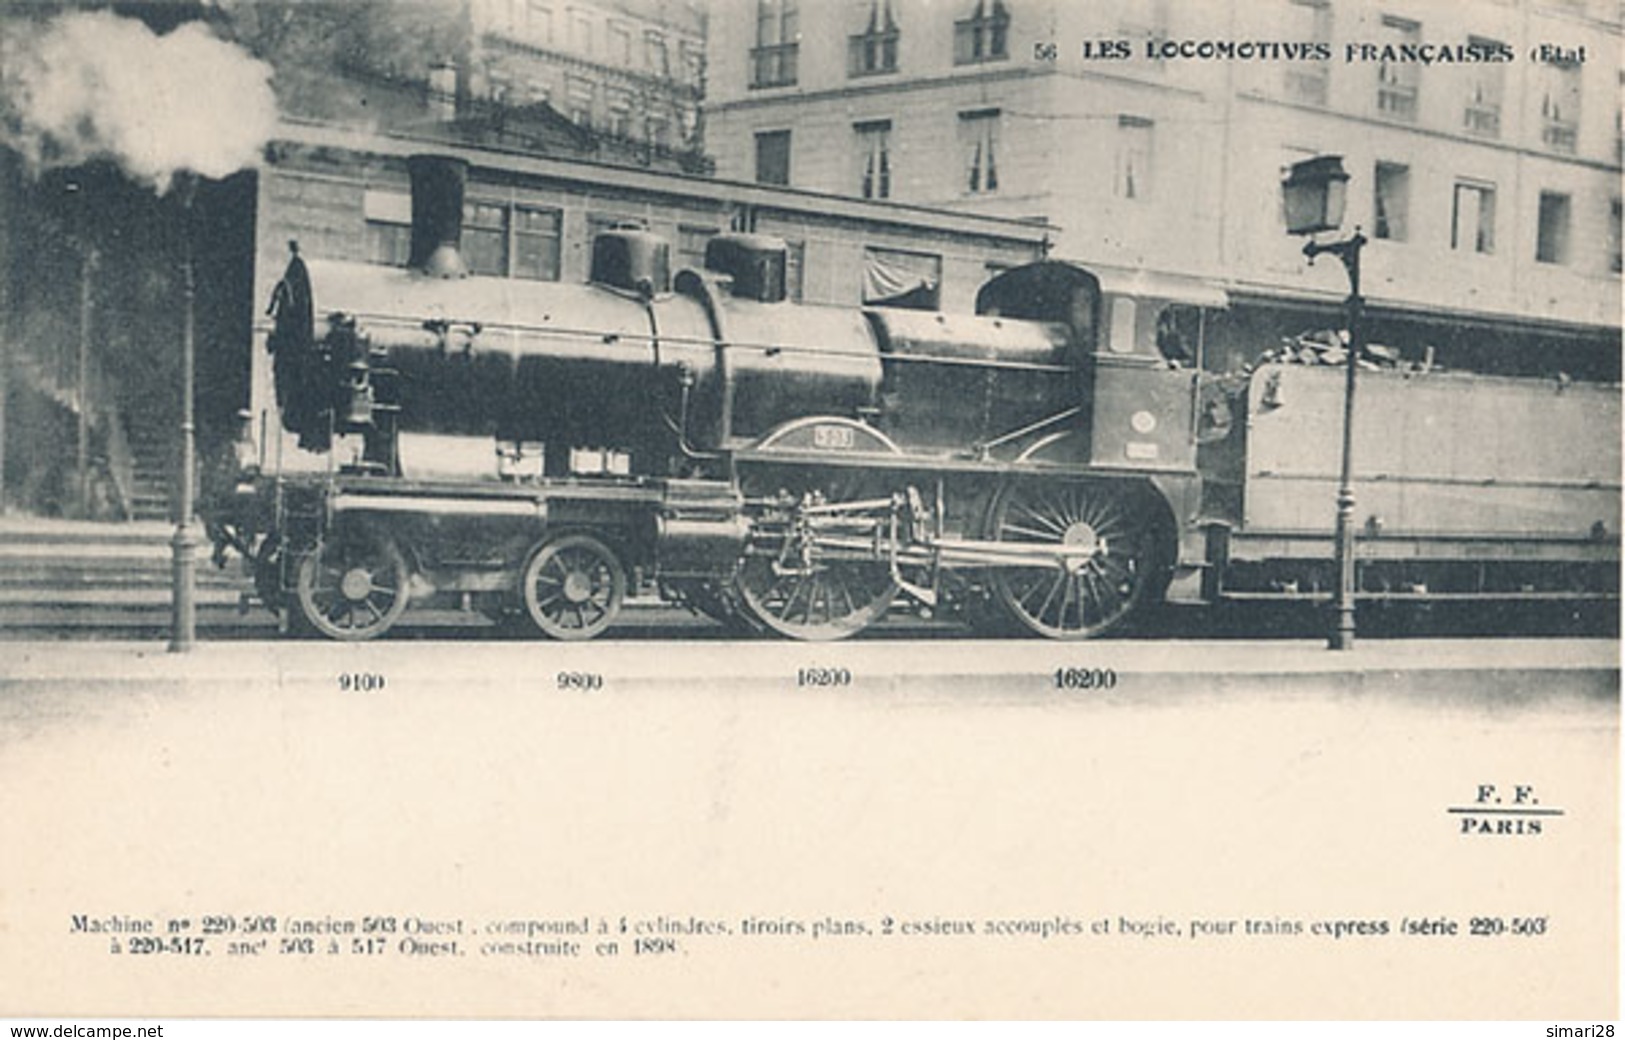 LES LOCOMOTIVES FRANCAISES - N° 56 - MACHINE N° 220 503 ANCIEN 503 OUEST COMPOUND A 4 CYLINDRES TIROIRS PLANS 2 ESSIEUX - Trains